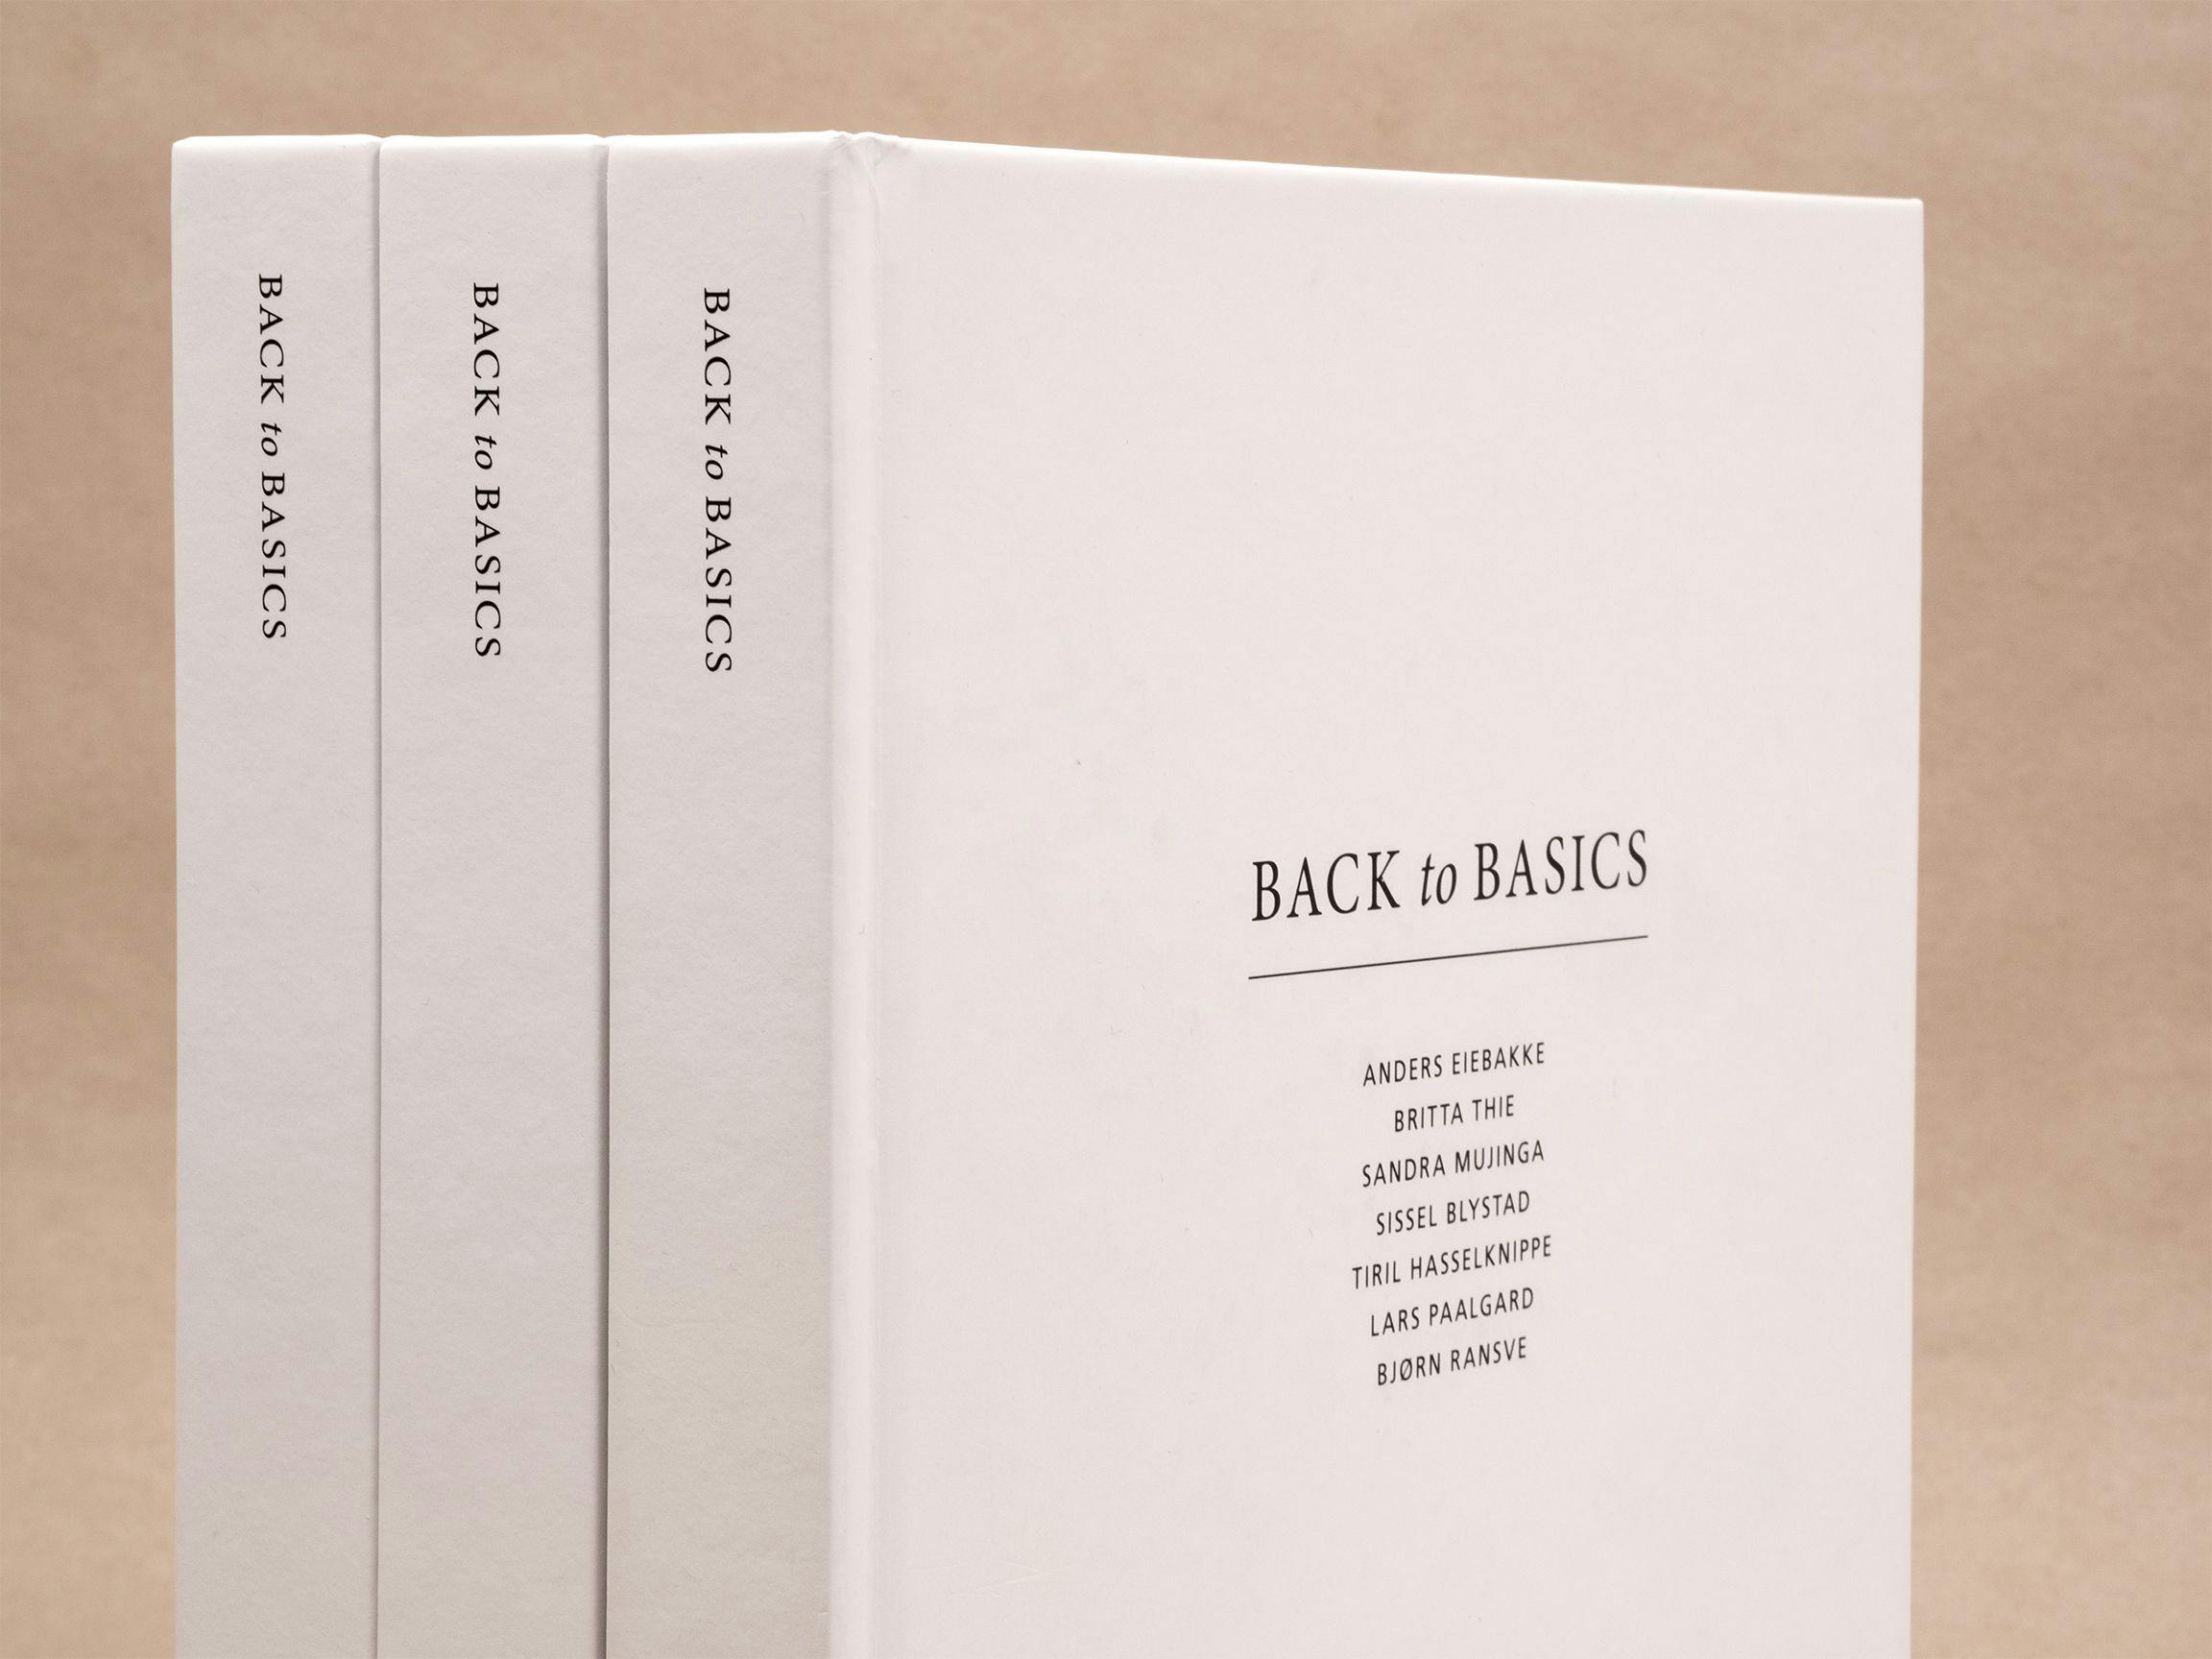 Katalog til utstillingen BACK to BASICS (Hovedbygningen)